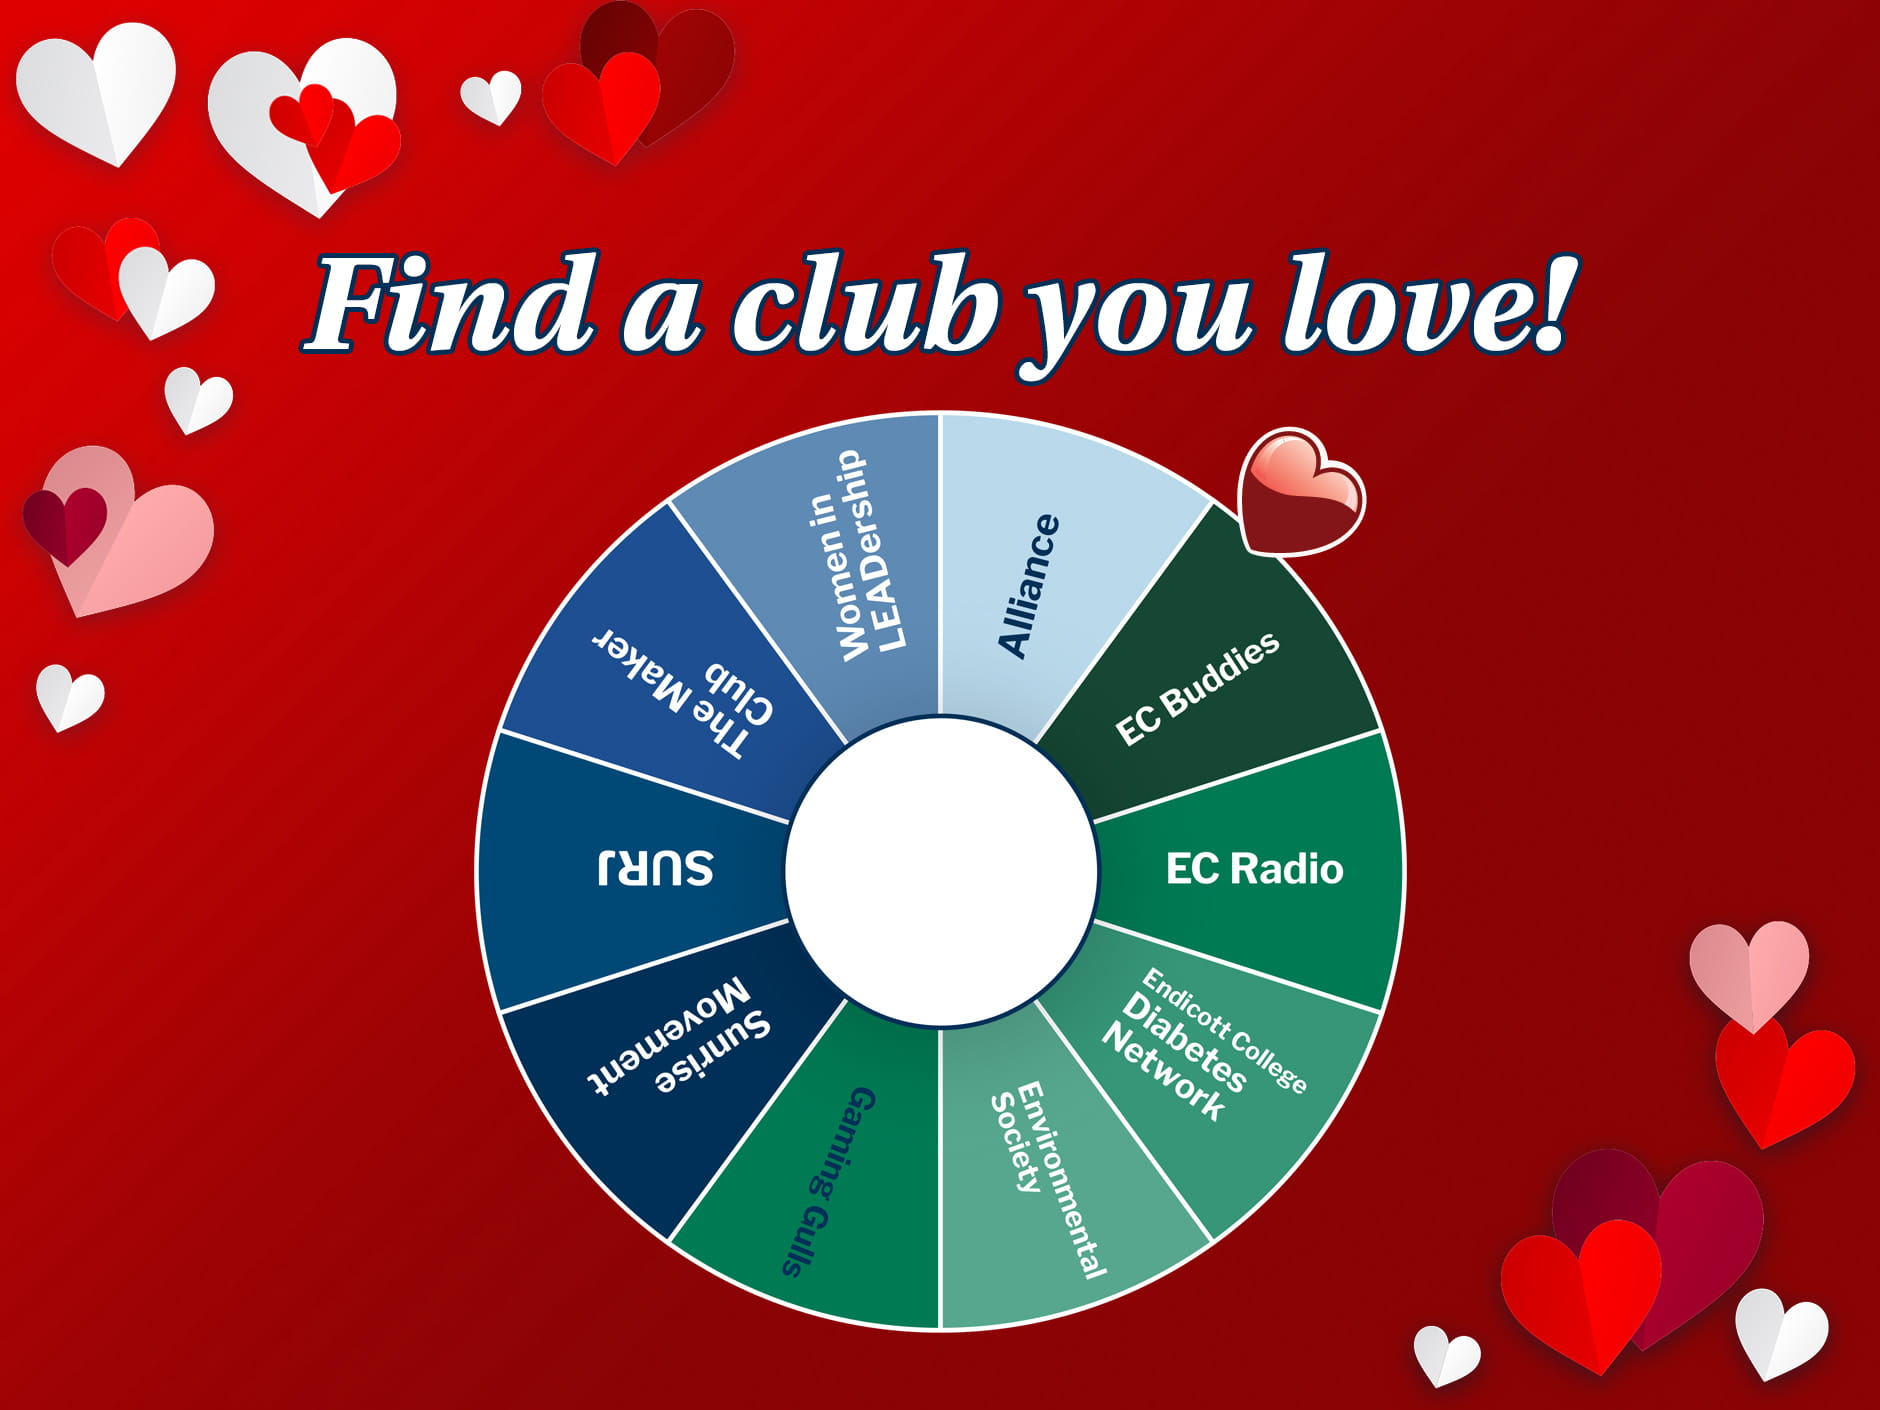 Find a club you love!